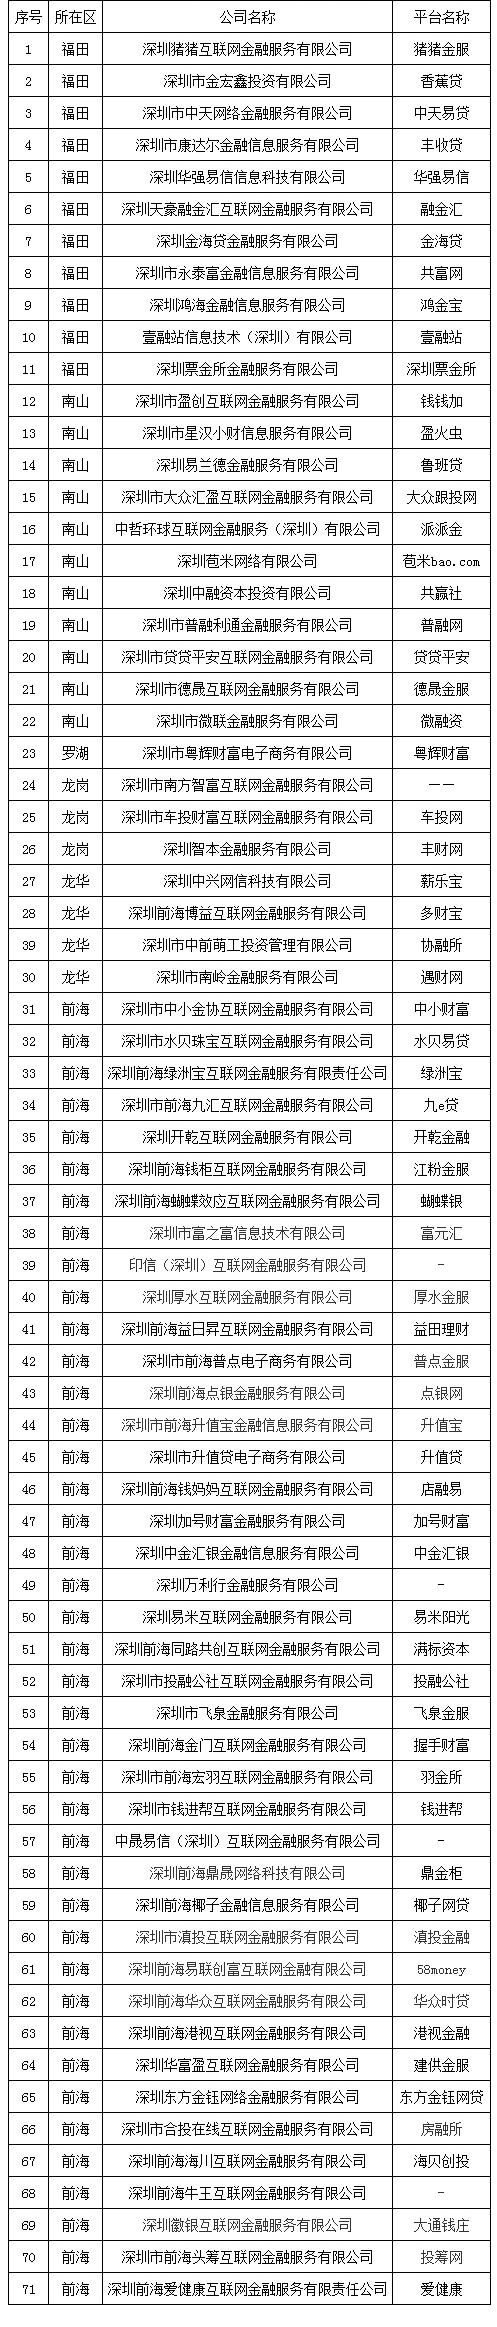 71家深圳网贷机构自愿退出，含多家国企及上市公司背景机构